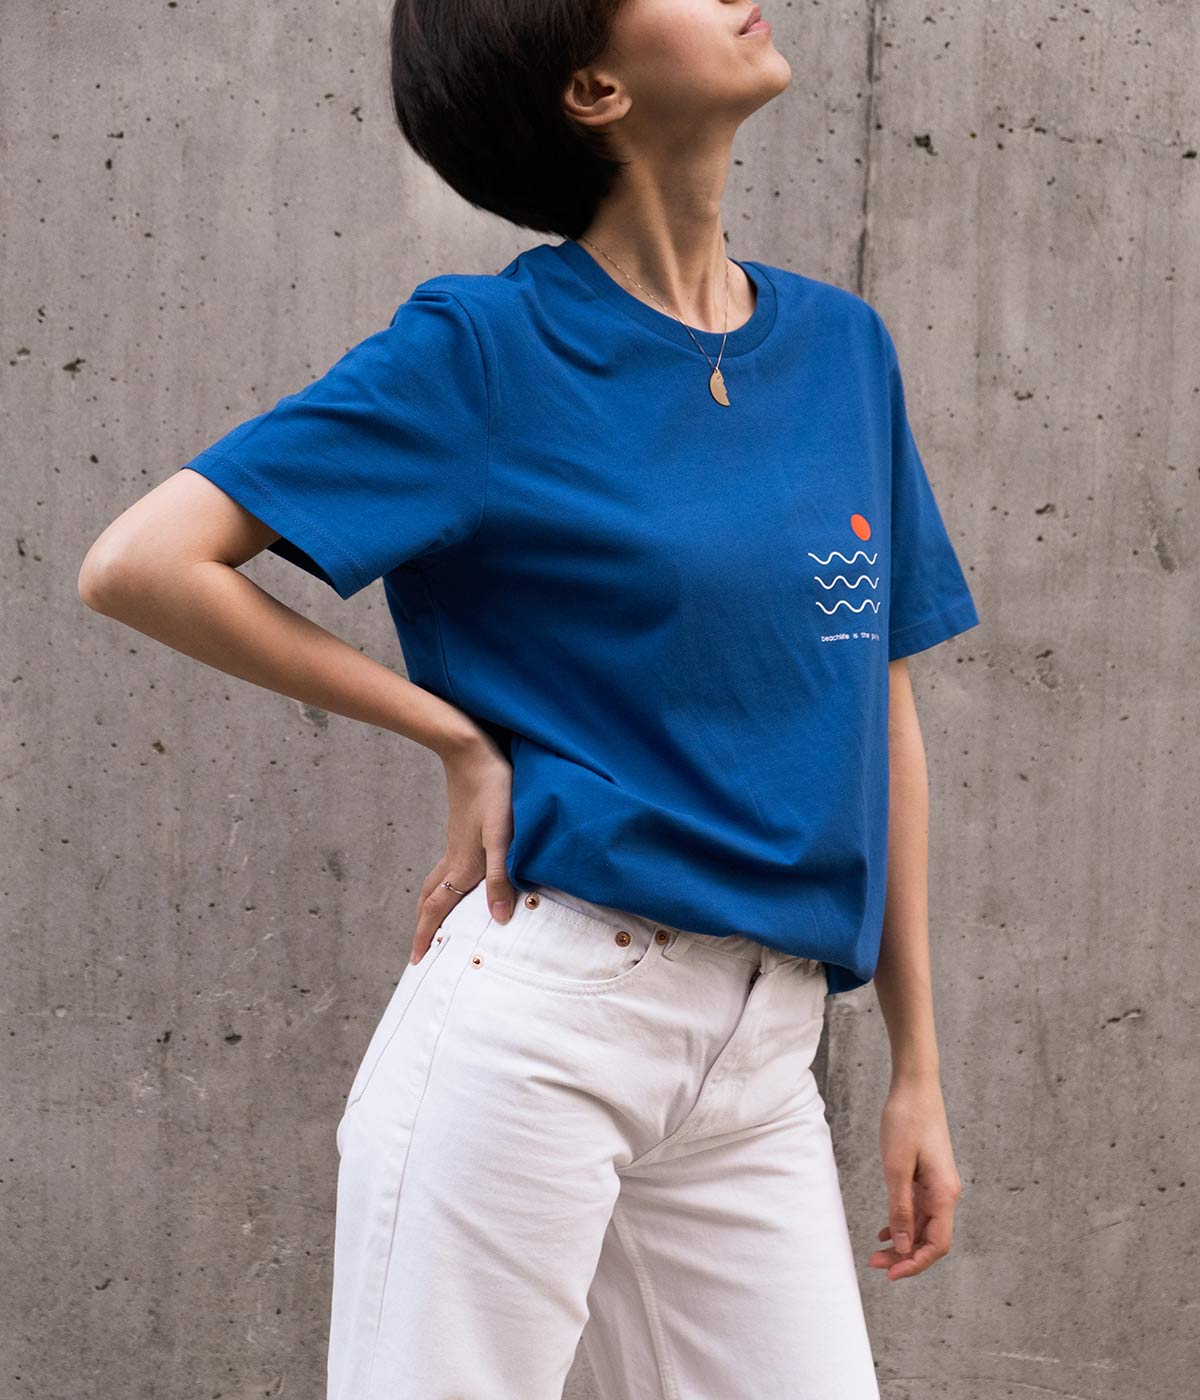 Fata cu tricou albastru imprimat cu print minimalist si blugi albi.